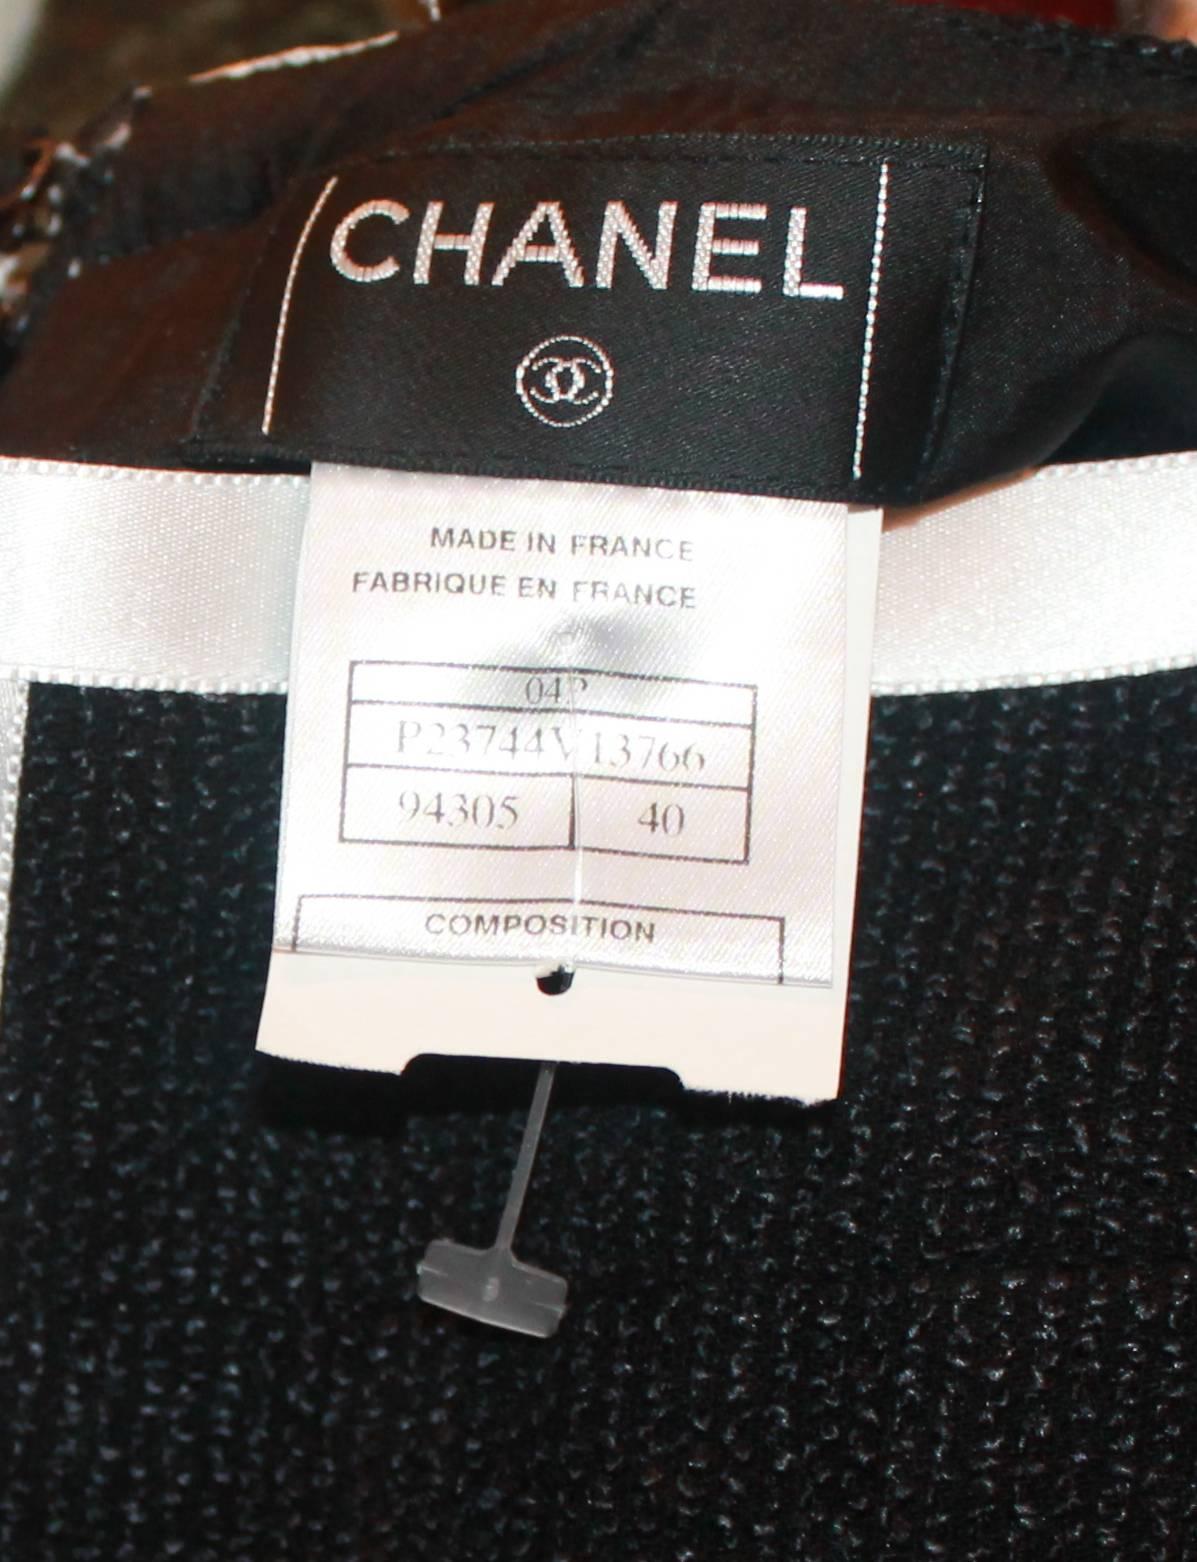 2004 Chanel Black & White Ribbon Trimmed Skirt - 40 1